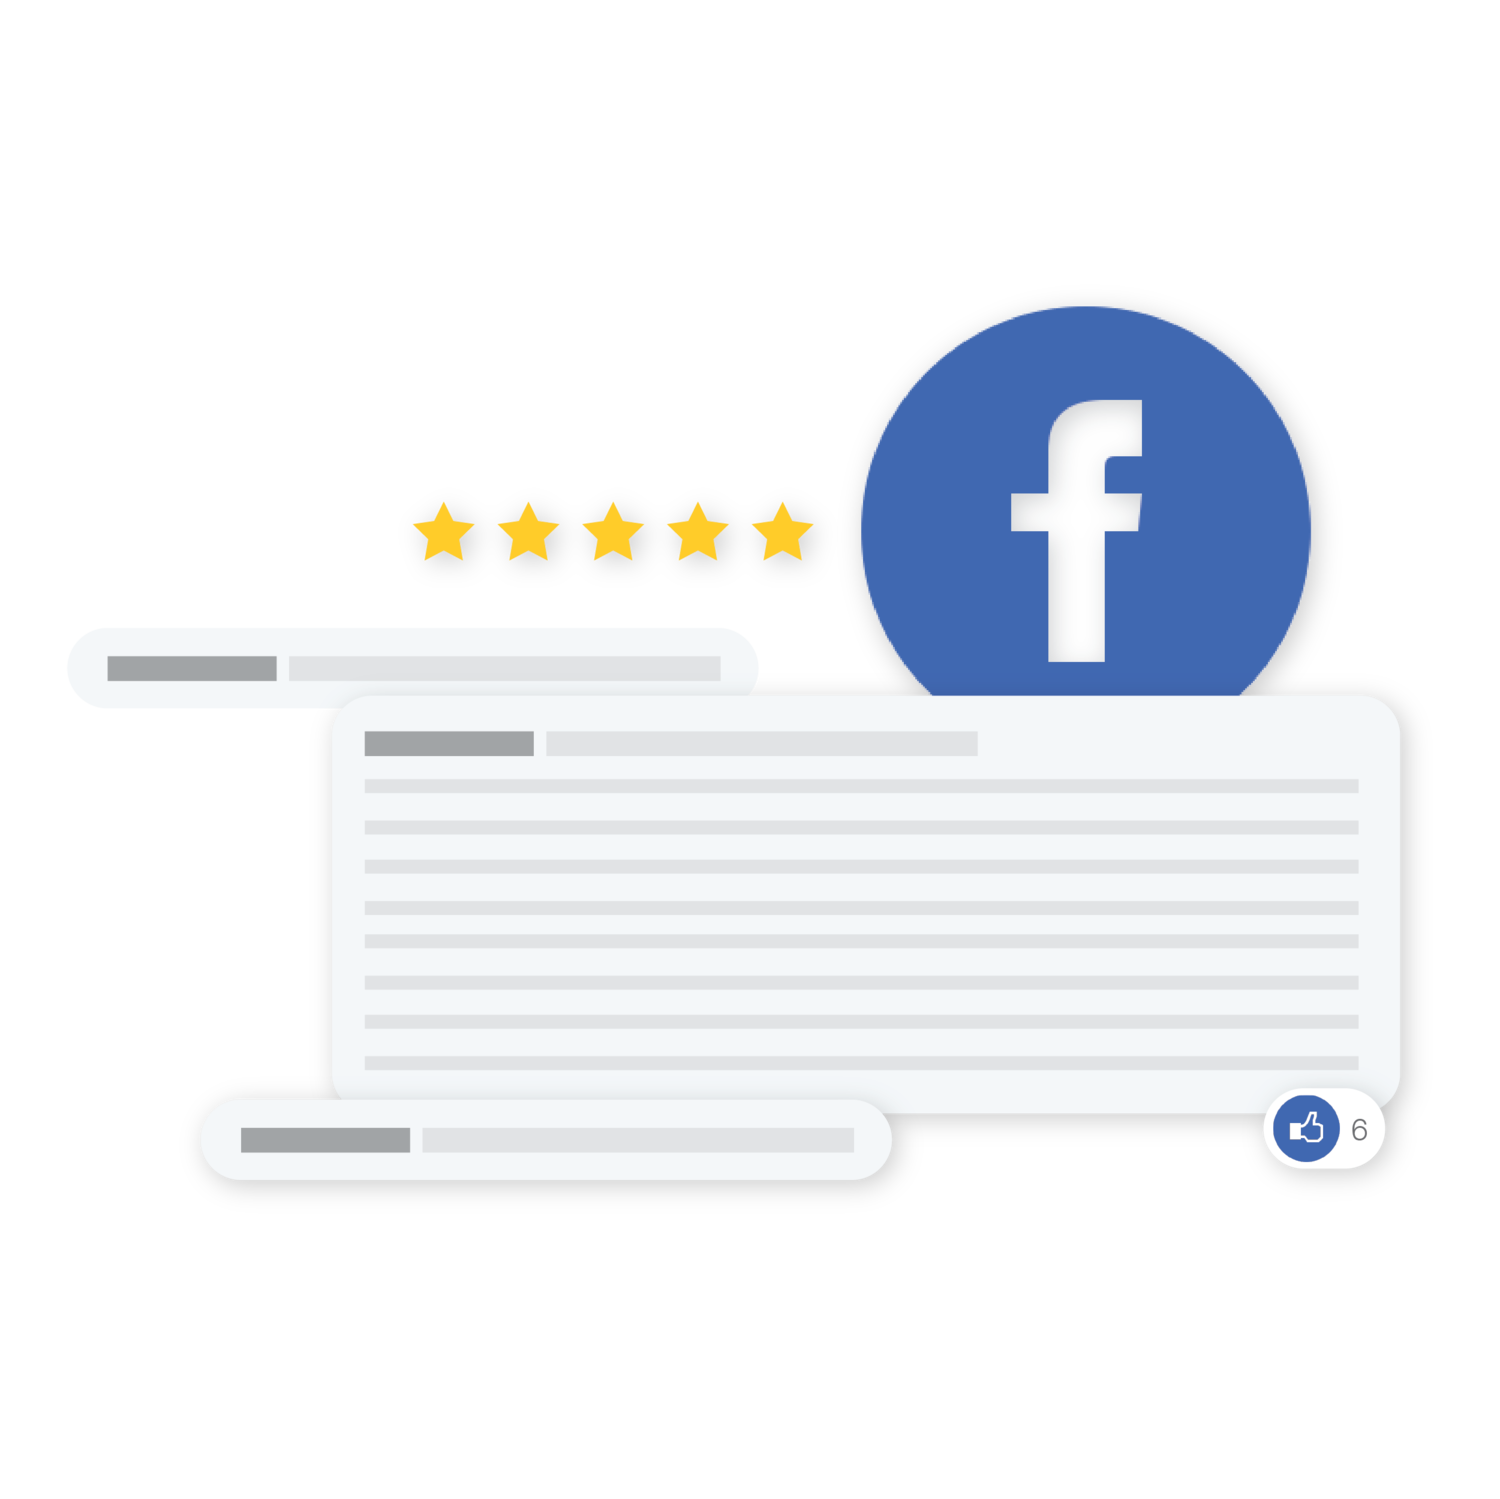 facebook review button